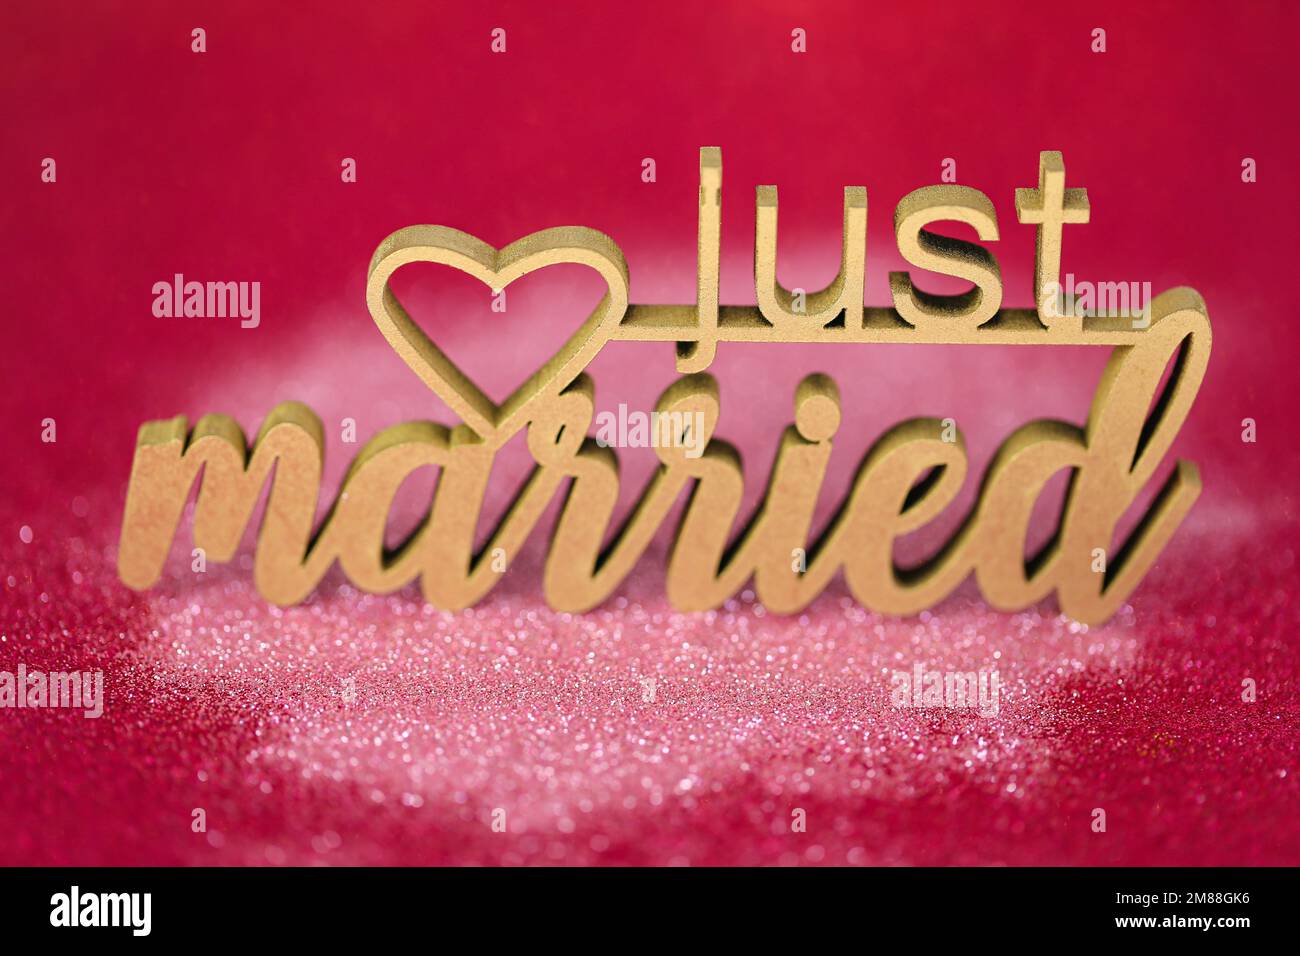 Hochzeitssymbol. Gerade verheiratete Inschrift auf pinkfarbenem Fuchsia-Hintergrund Stockfoto